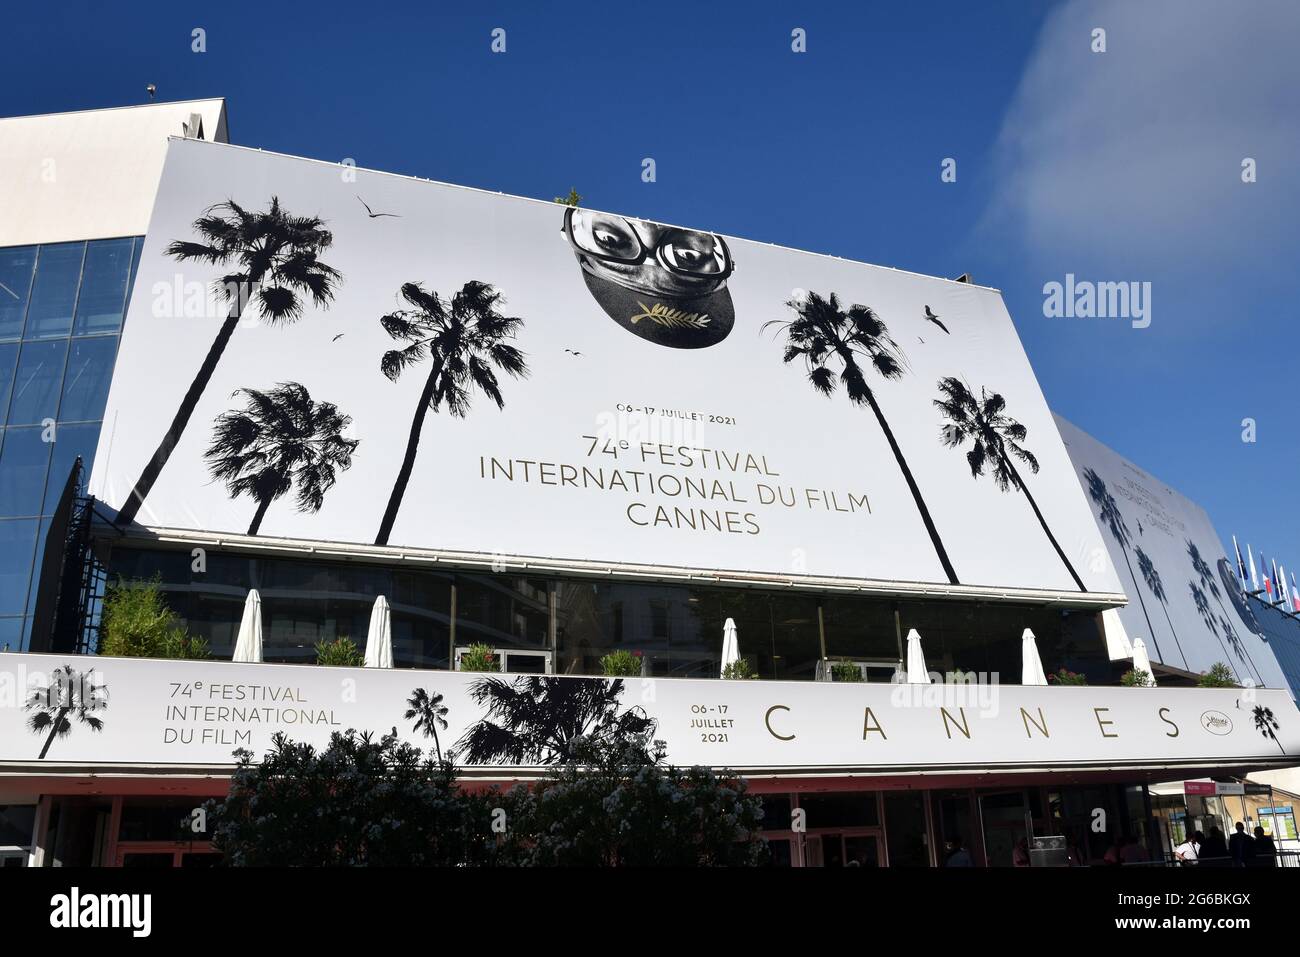 Francia, Cannes, il manifesto ufficiale del 74a Festival Internazionale del Film sul Palazzo del Festival. L'artista scelto quest'anno è Spike Lee. Foto Stock